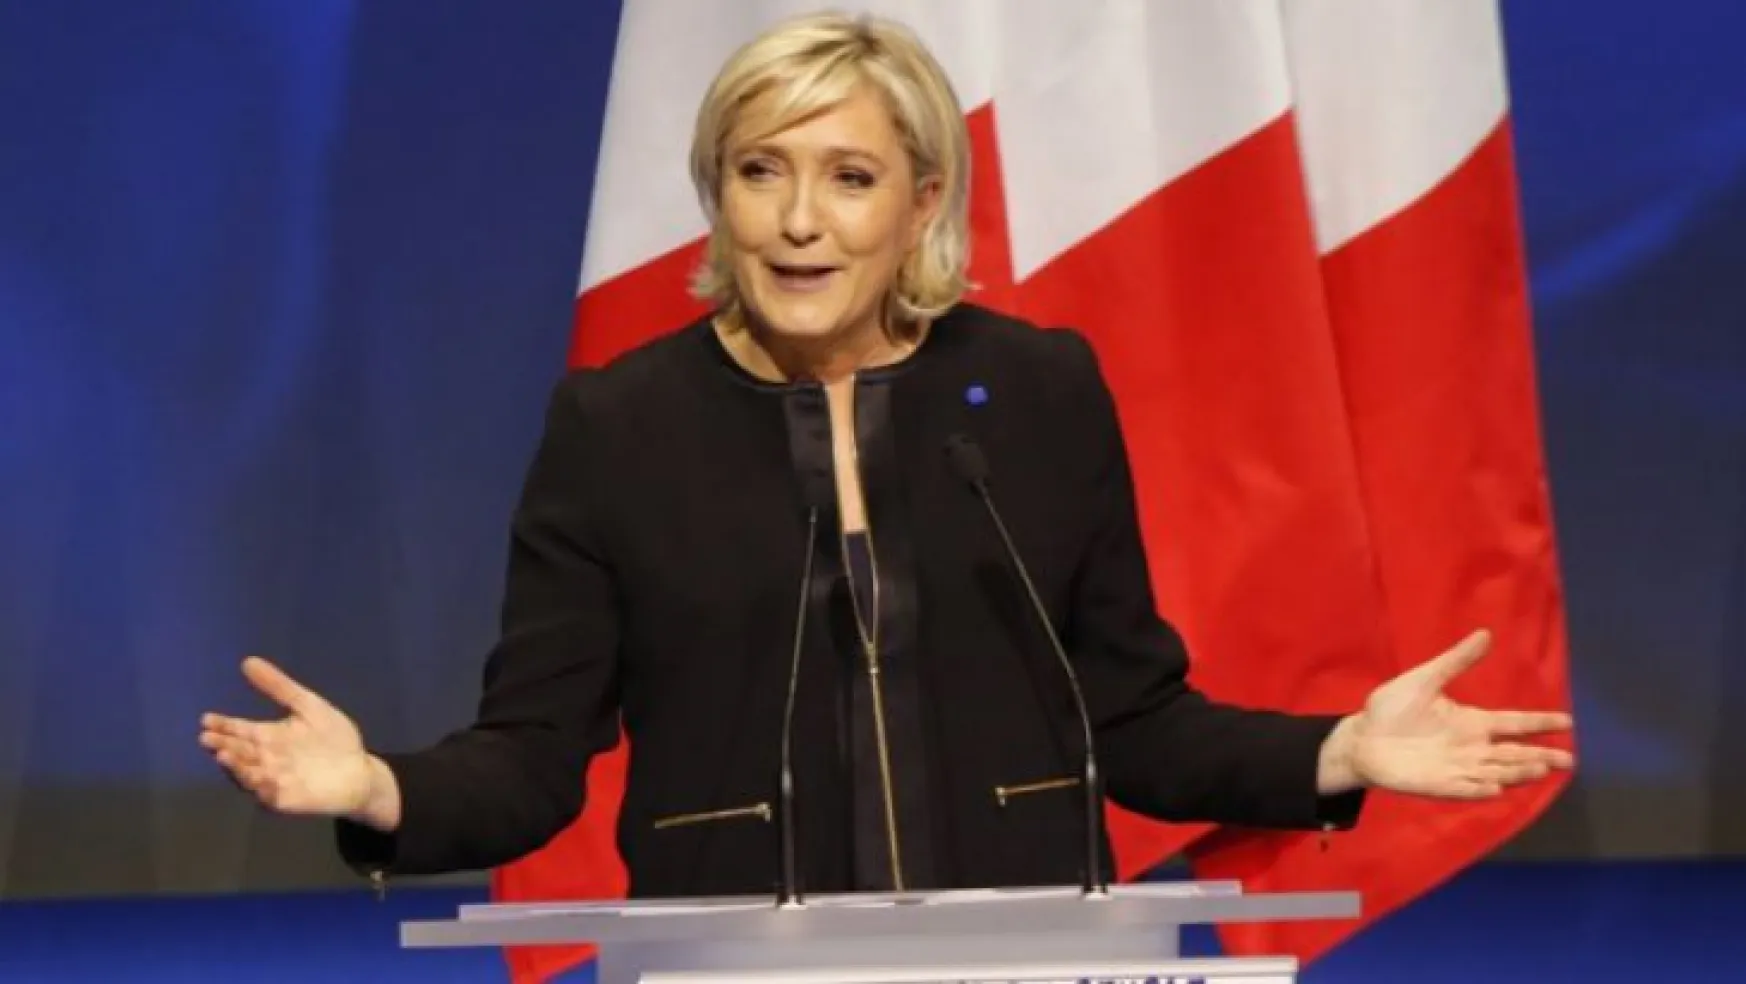 Le Pen zimmetine para geçirmekle suçlandı